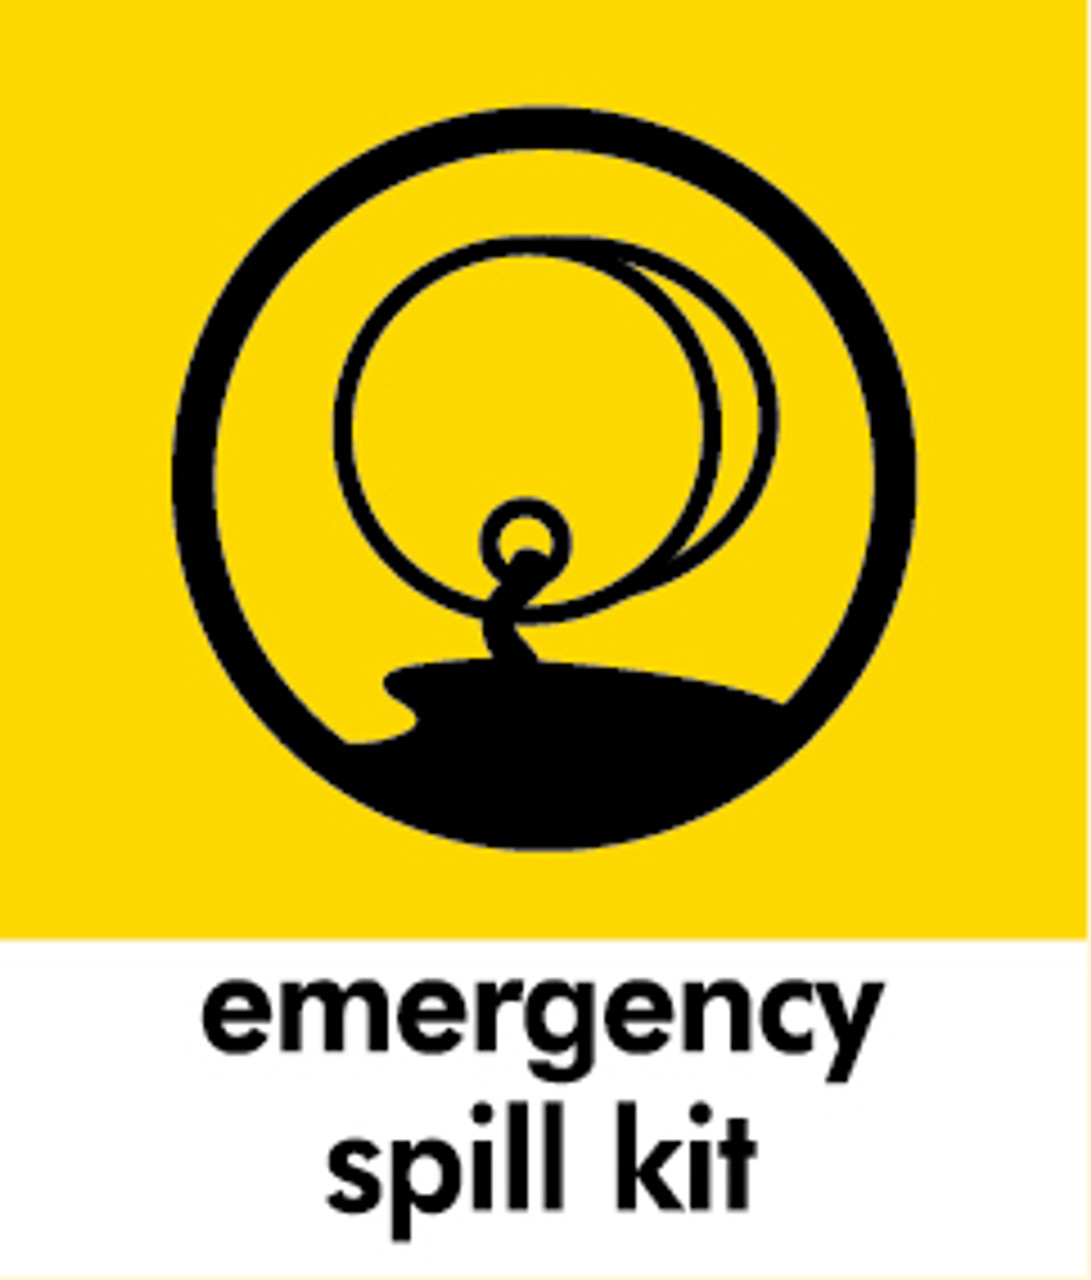 Small Waste Bin Sticker - Emergency Spill Kit - PC85ESK